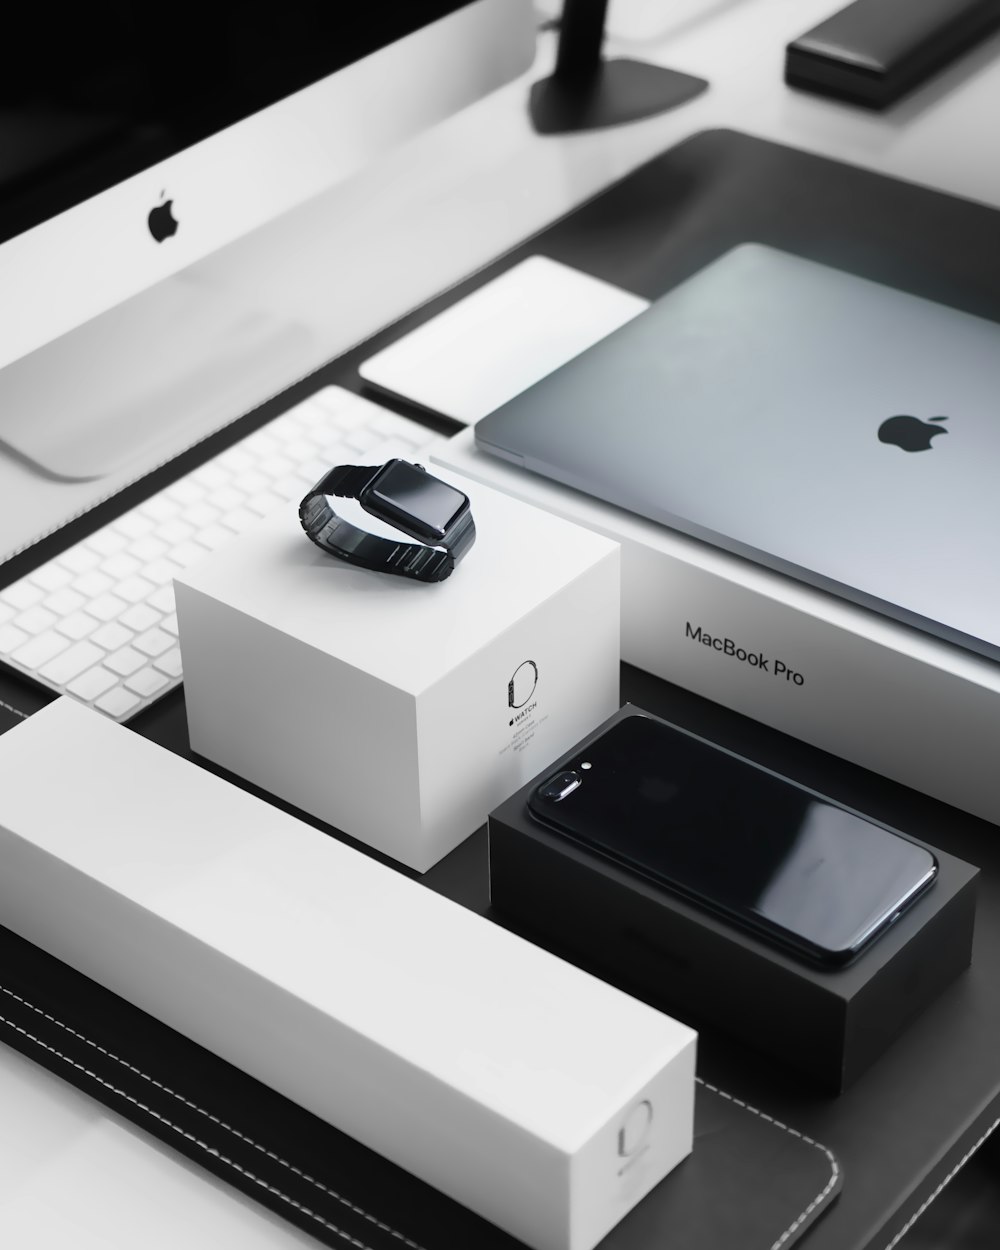 custodia nera spaziale Apple Watch, MacBook Pro argento, iPhone 7 Plus nero corvino e iMac argento con scatole corrispondenti